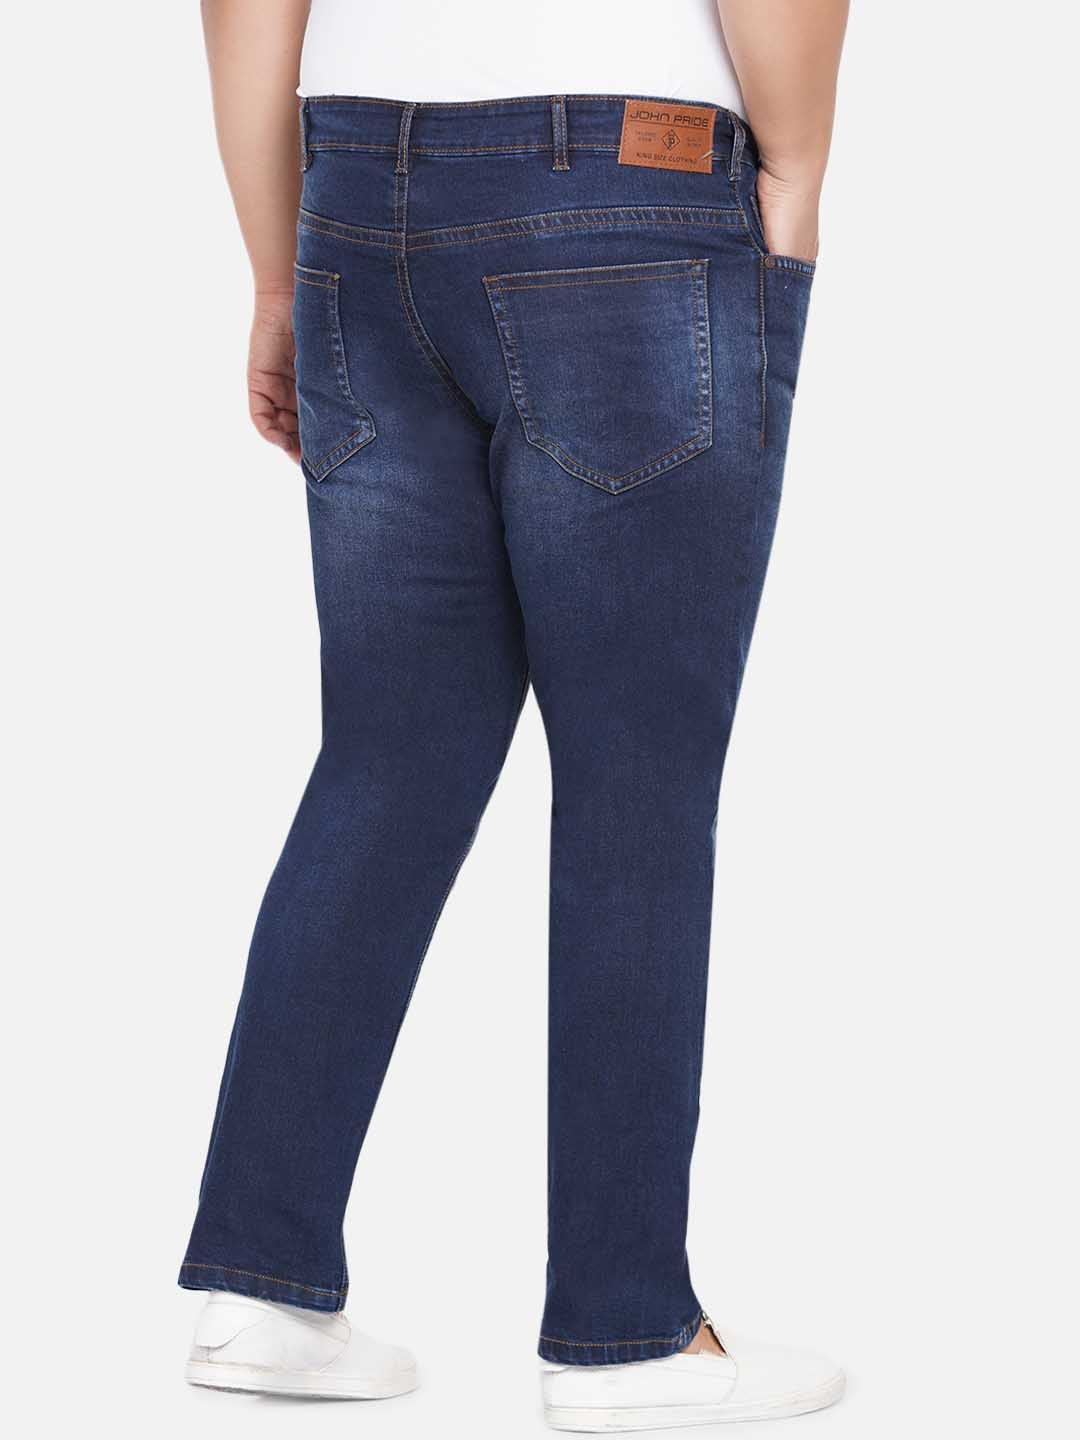 bottomwear/jeans/JPJ12233/jpj12233-5.jpg